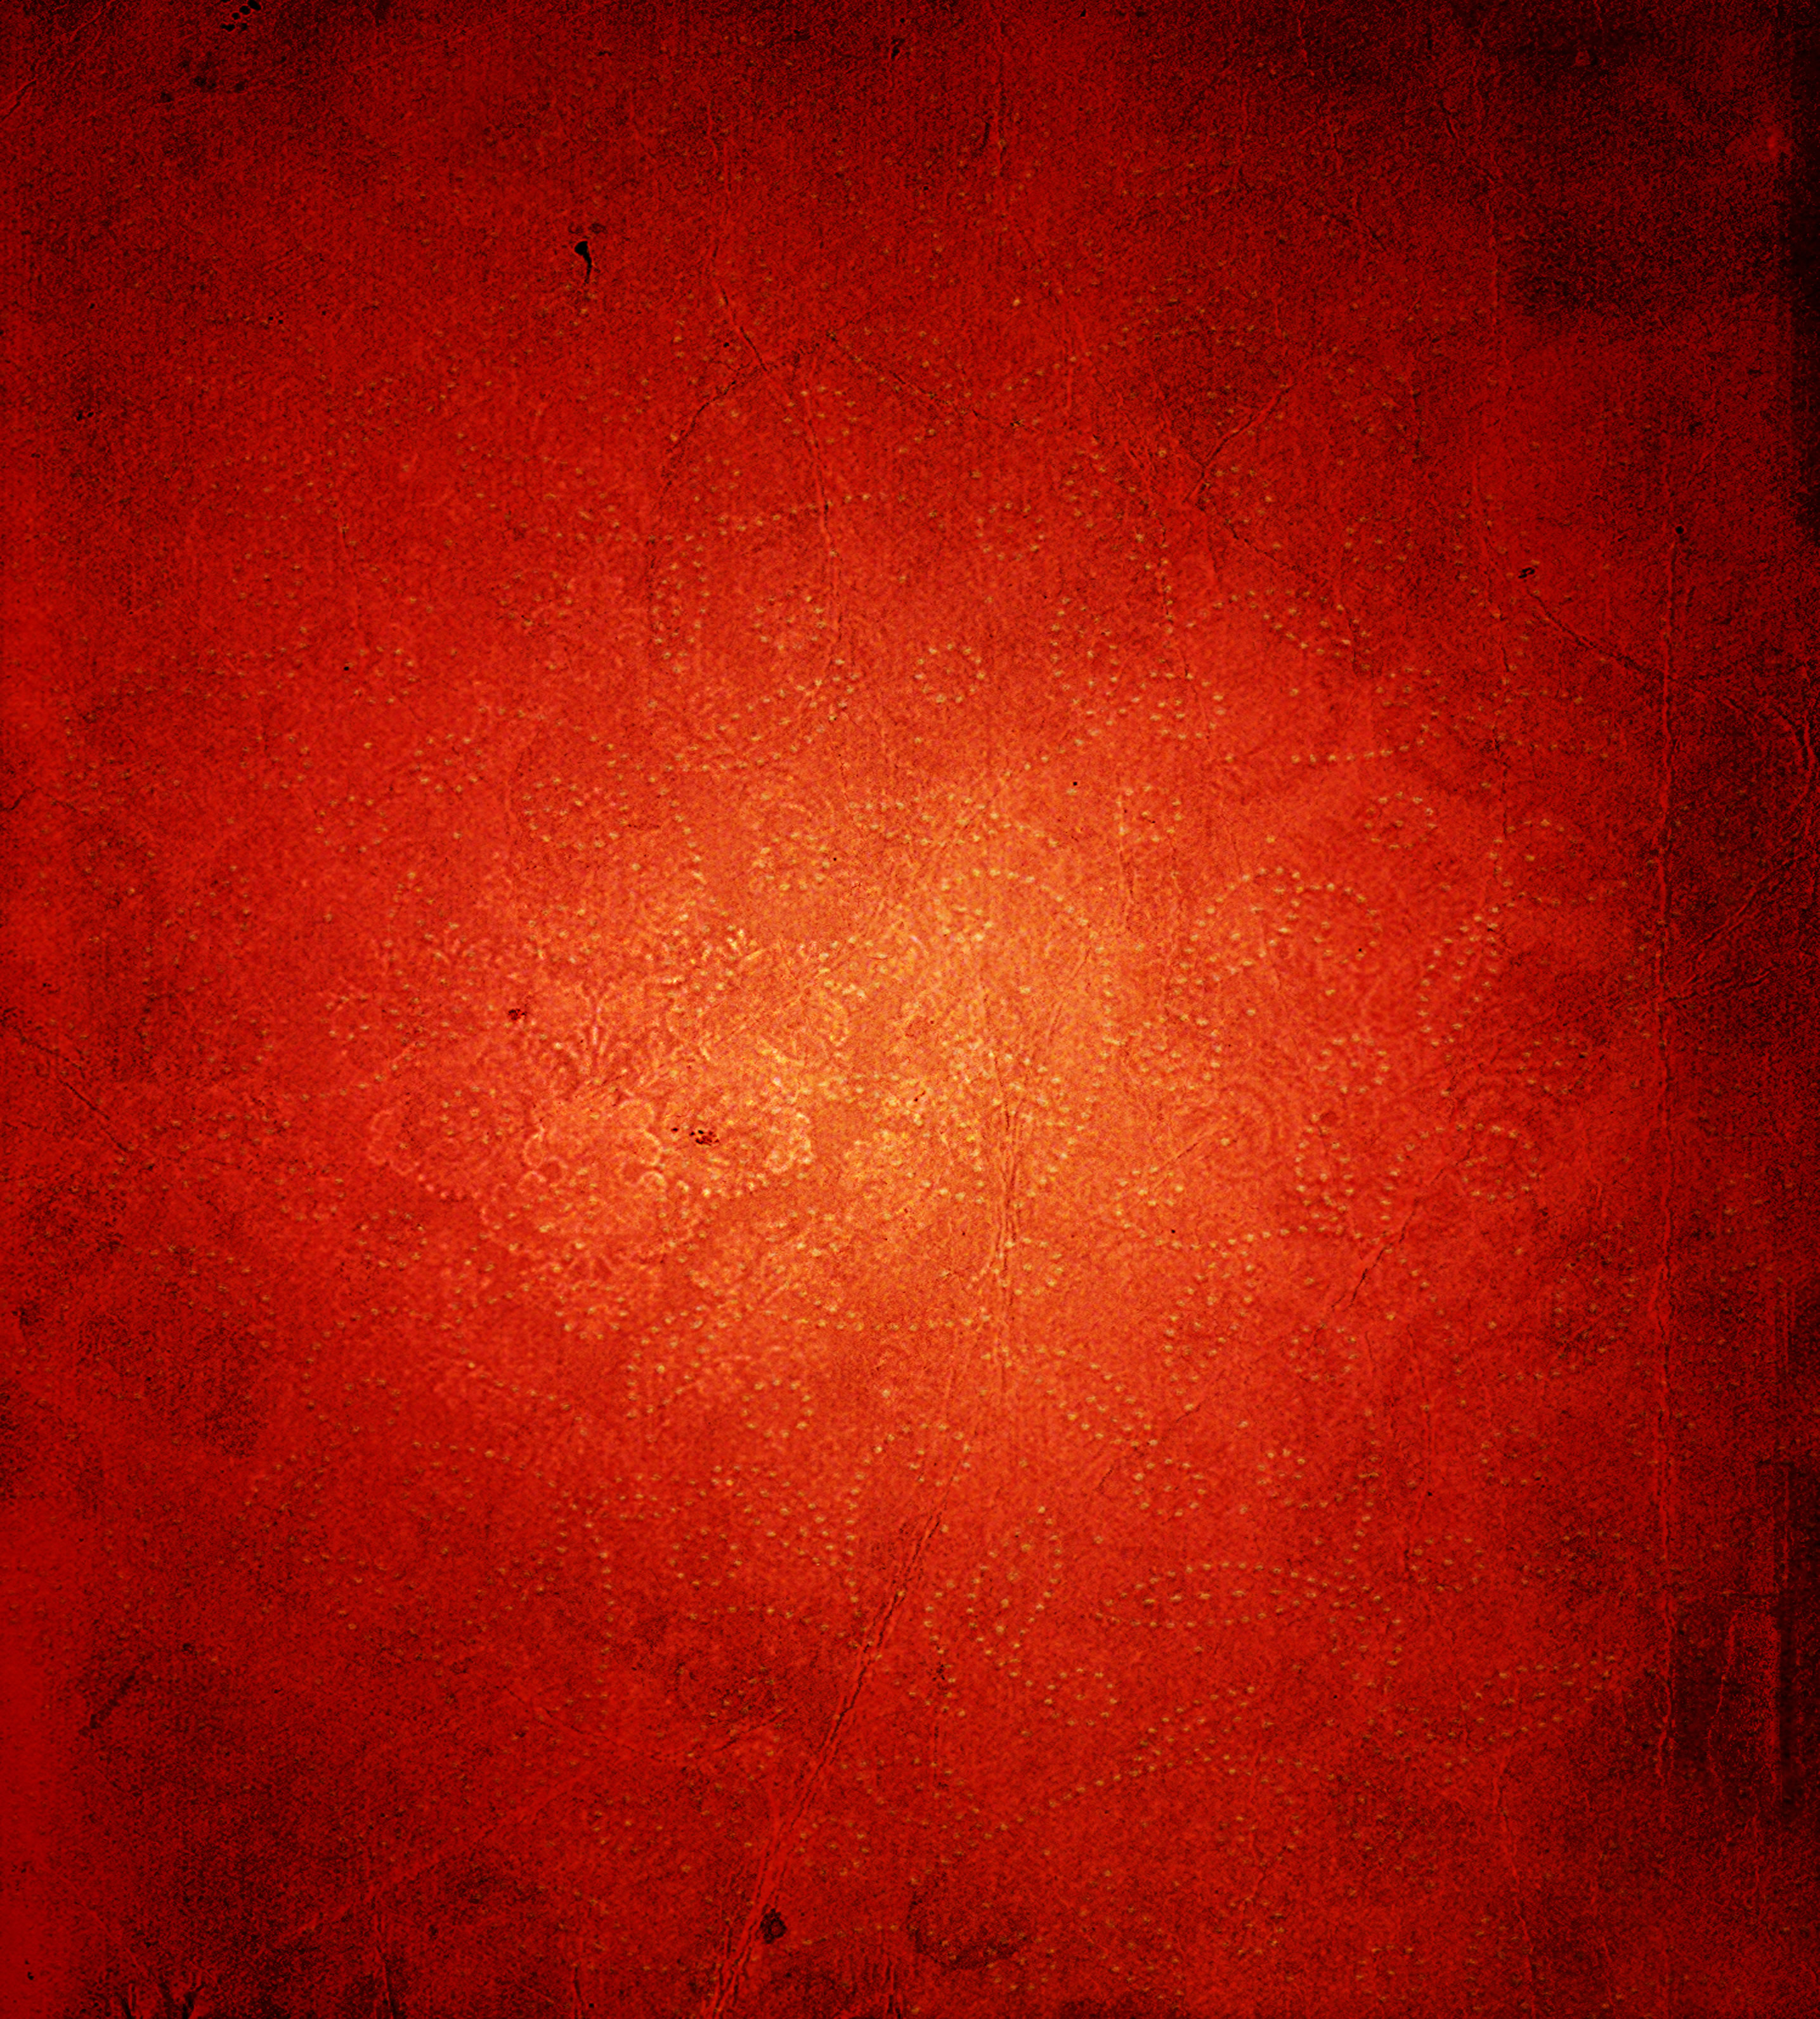 Sơn đỏ đã từ lâu trở thành một lựa chọn phổ biến trong việc trang trí và tô điểm không gian sống. Hãy đến với những hình ảnh sơn đỏ, mang đến cho bạn những cảm nhận về vẻ đẹp tinh tế và lôi cuốn của khoảng không đầy sức sống.